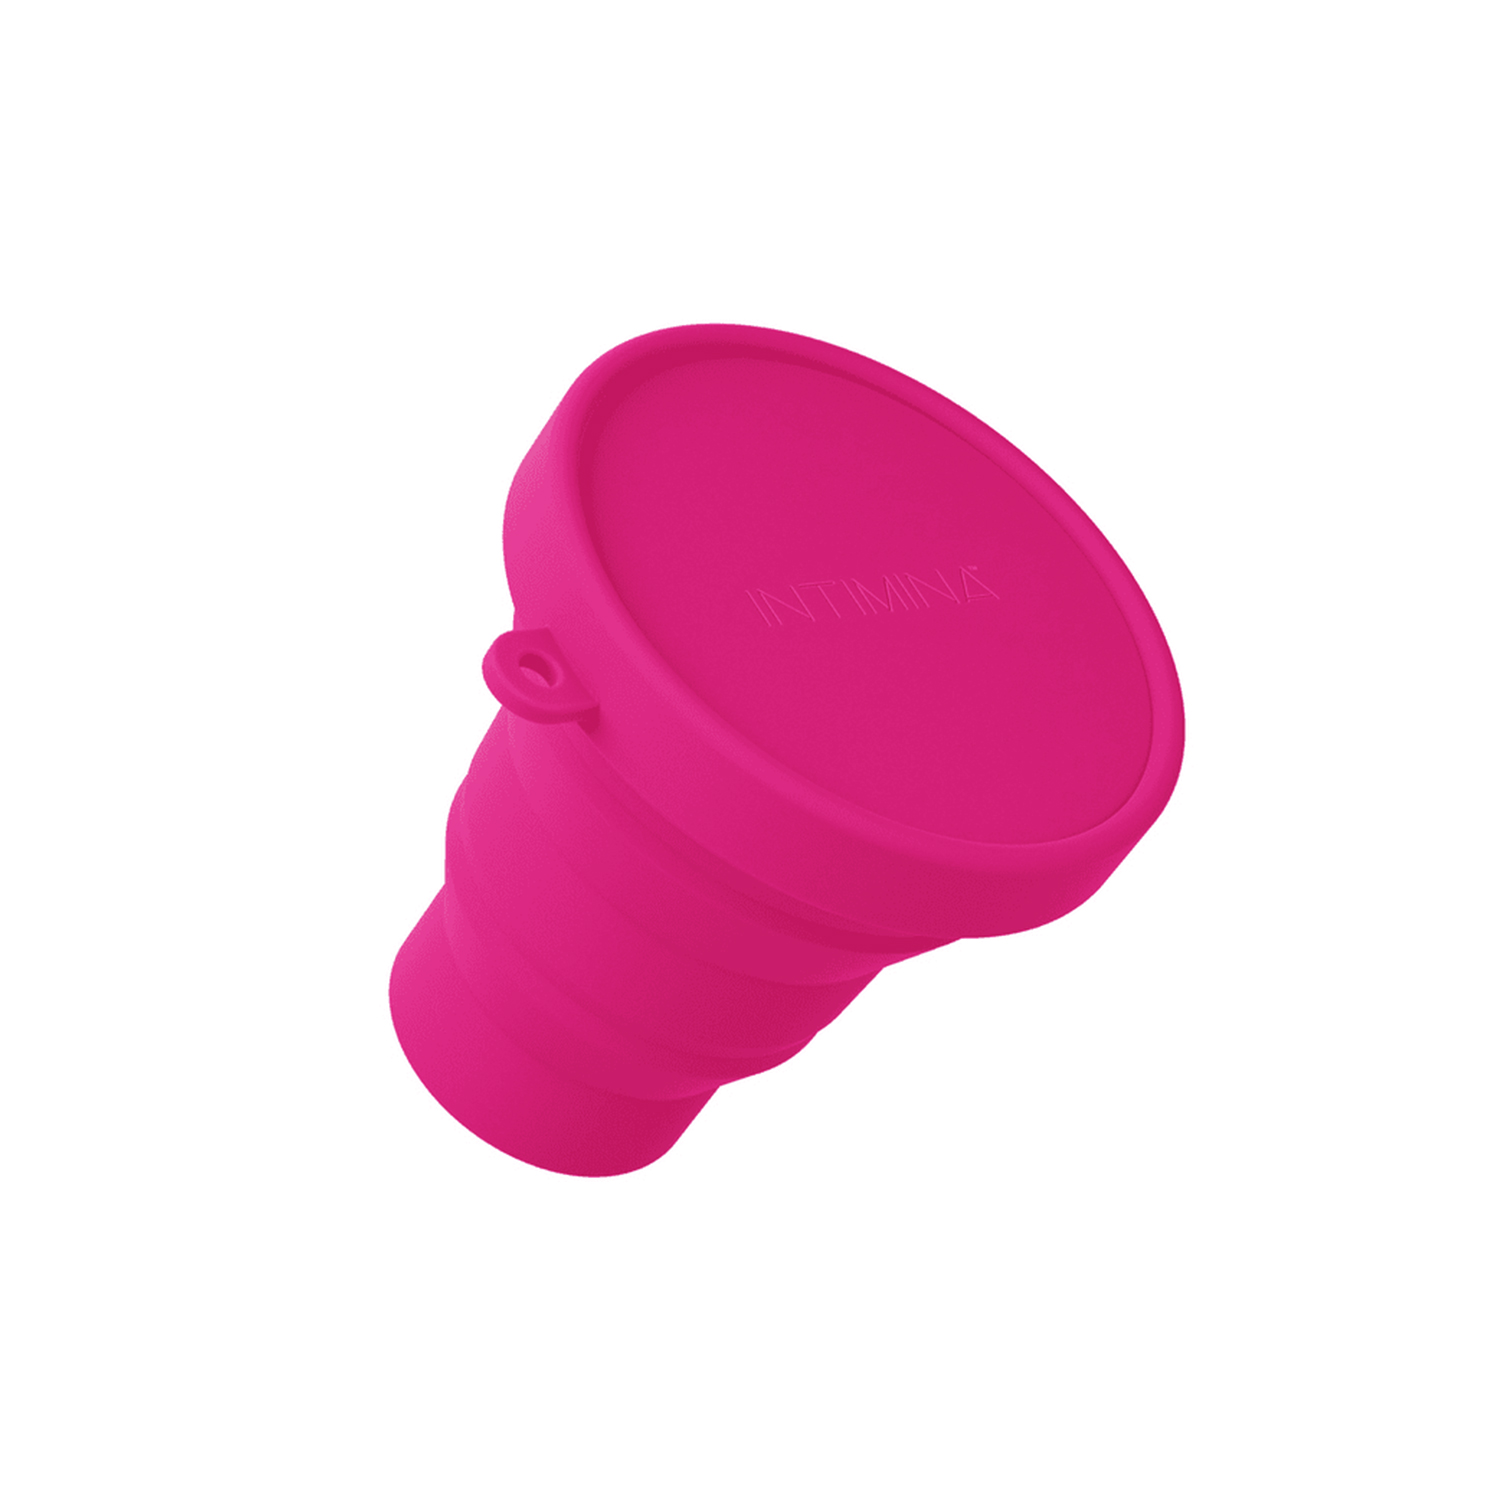 Esterilizador Copa Menstrual Rosa Sileucup - Bioshop El Cambio